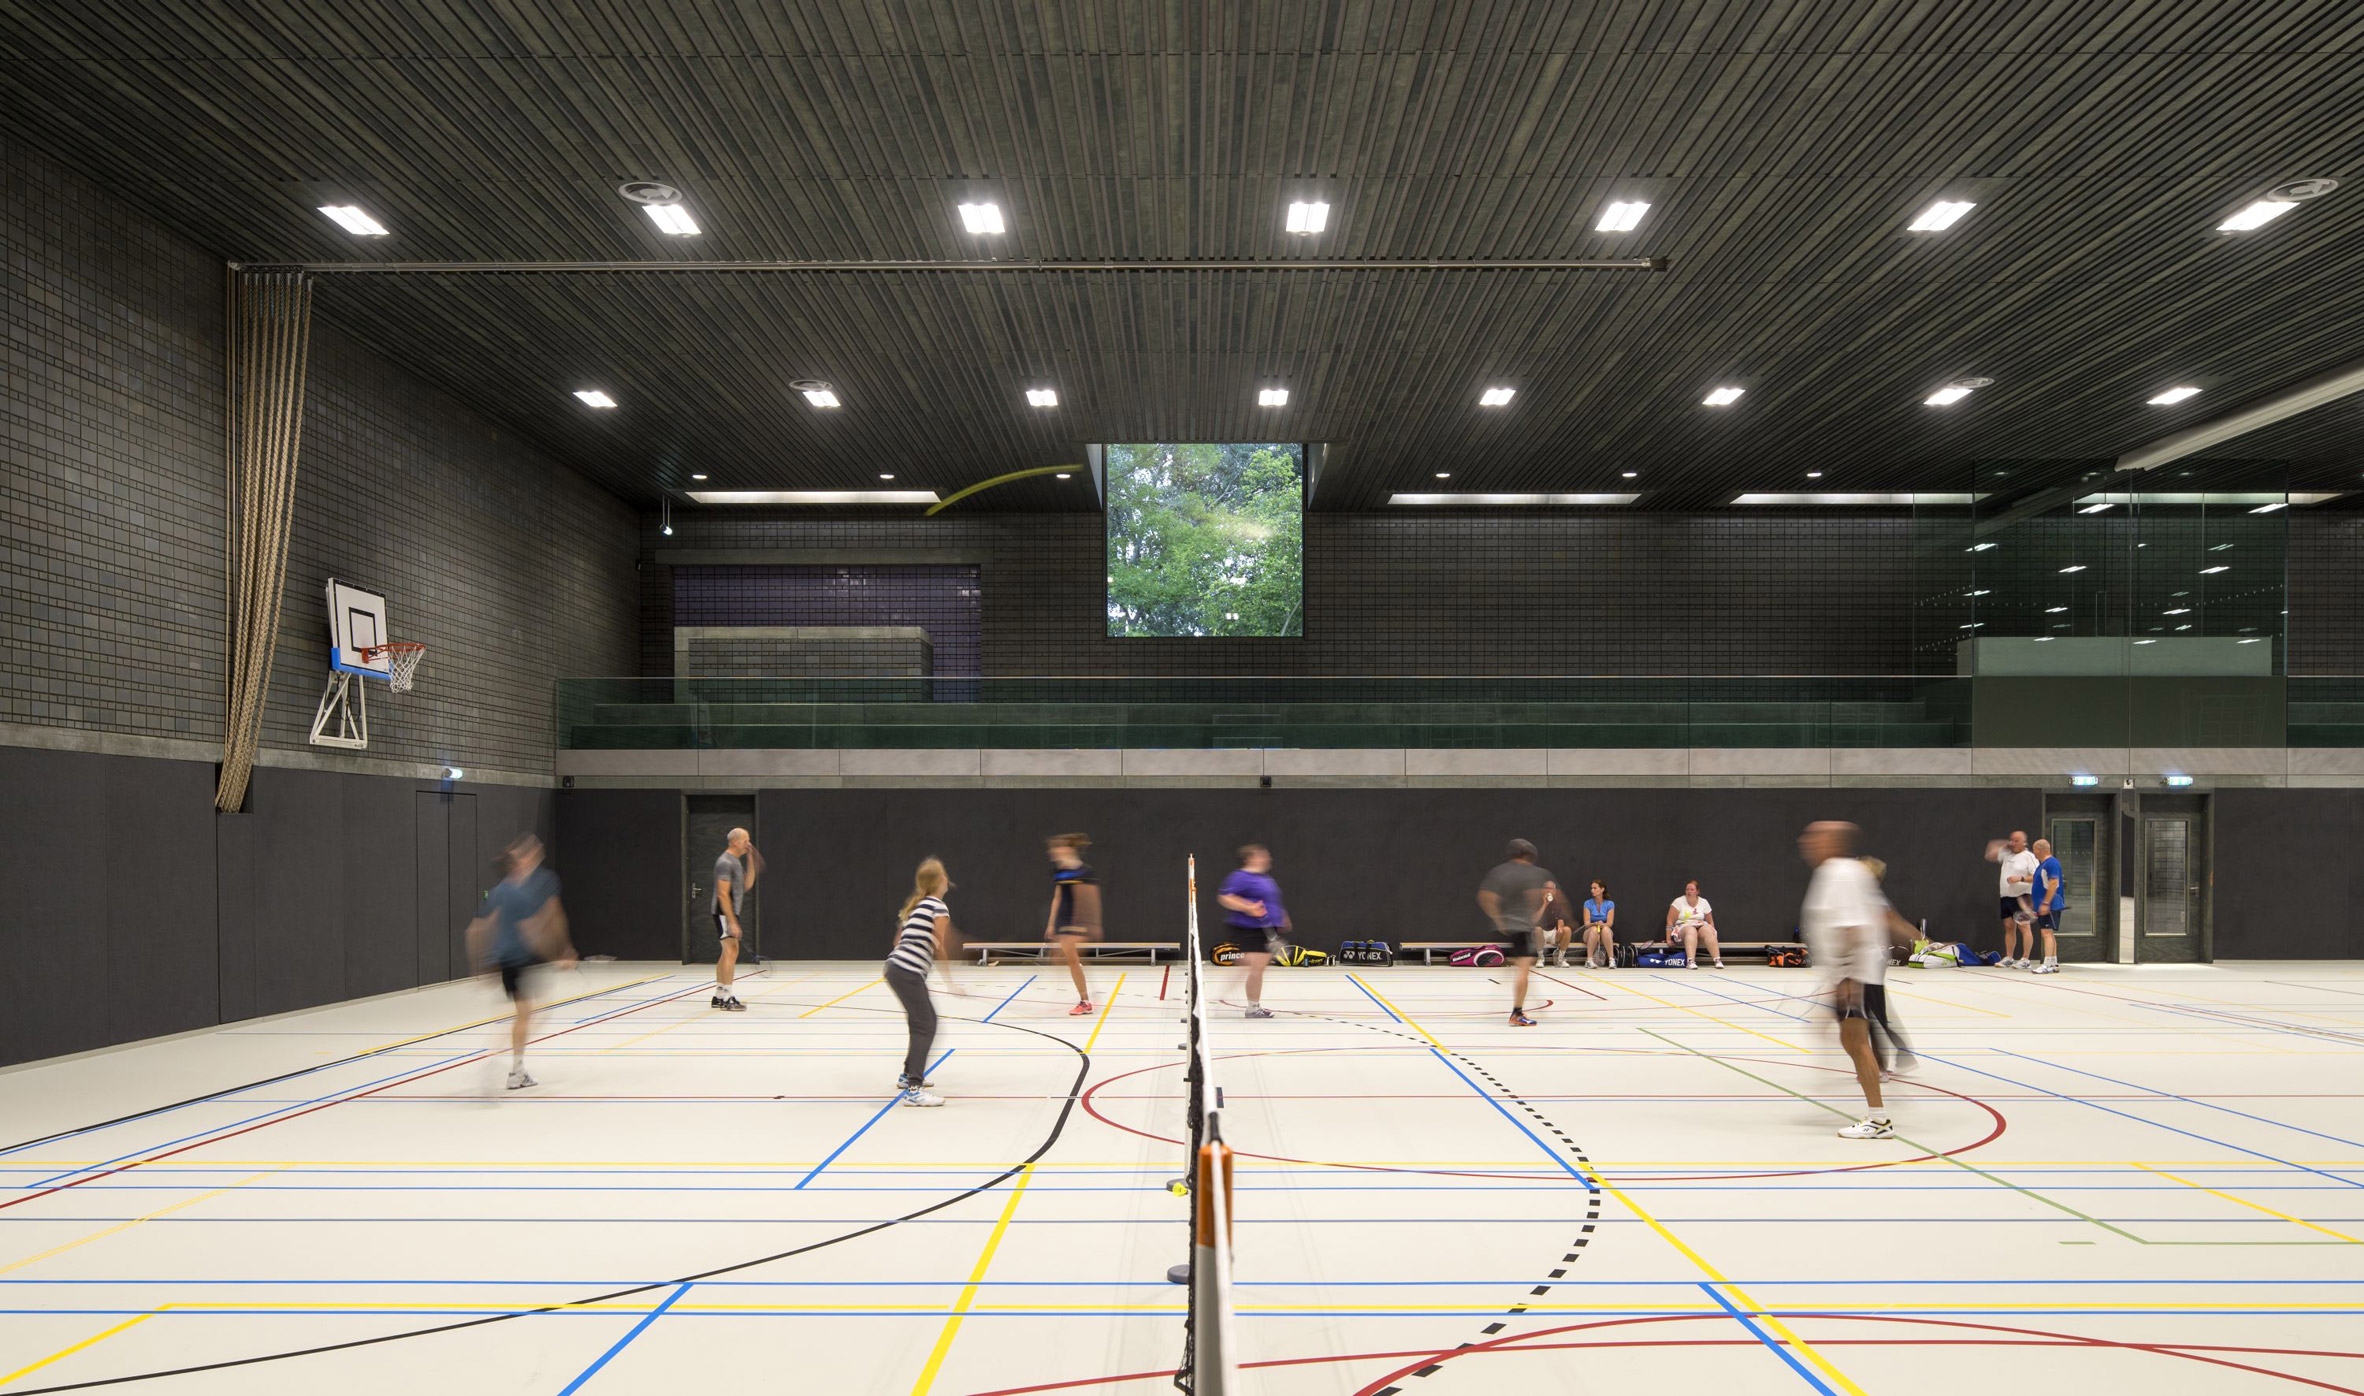 Sportscentre in Rotterdam by Koen van Velsen architects architecture netherlands